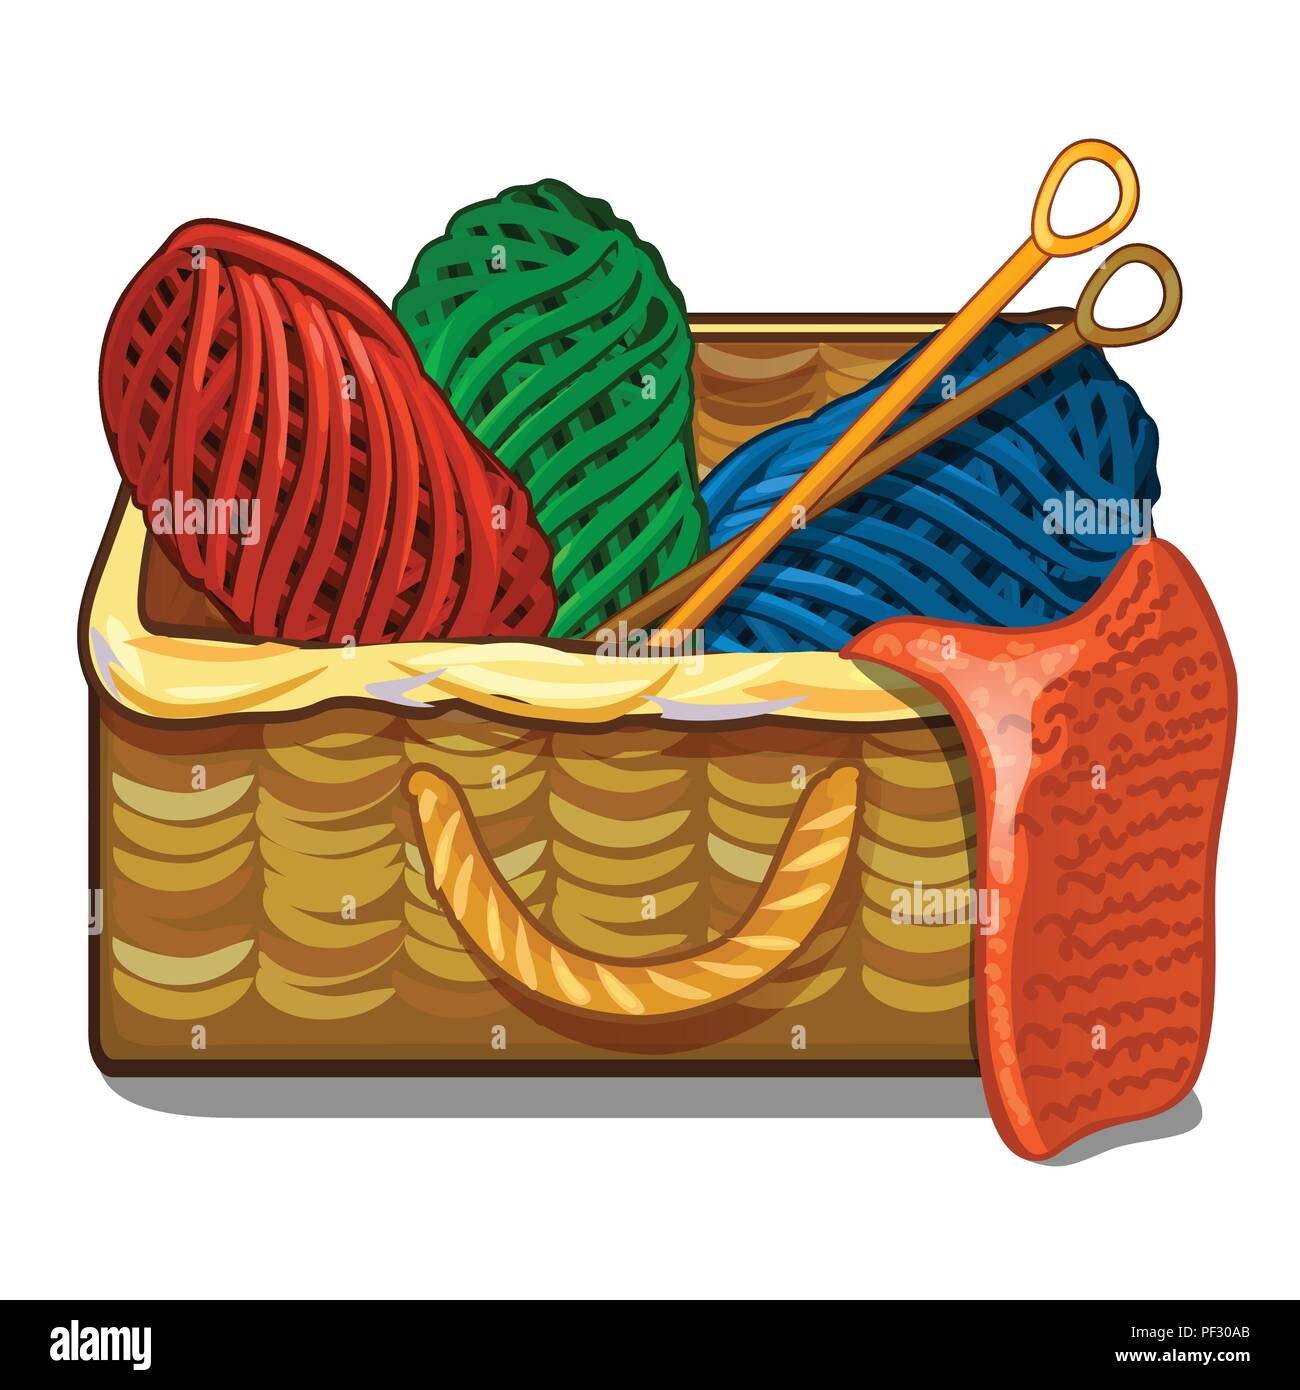 Set aus bunten Kabelsalat Wolle Garn und Stricknadeln sind in einem wicker  Kiste auf einem weißen Hintergrund. Vektor cartoon Close-up Abbildung  Stock-Vektorgrafik - Alamy